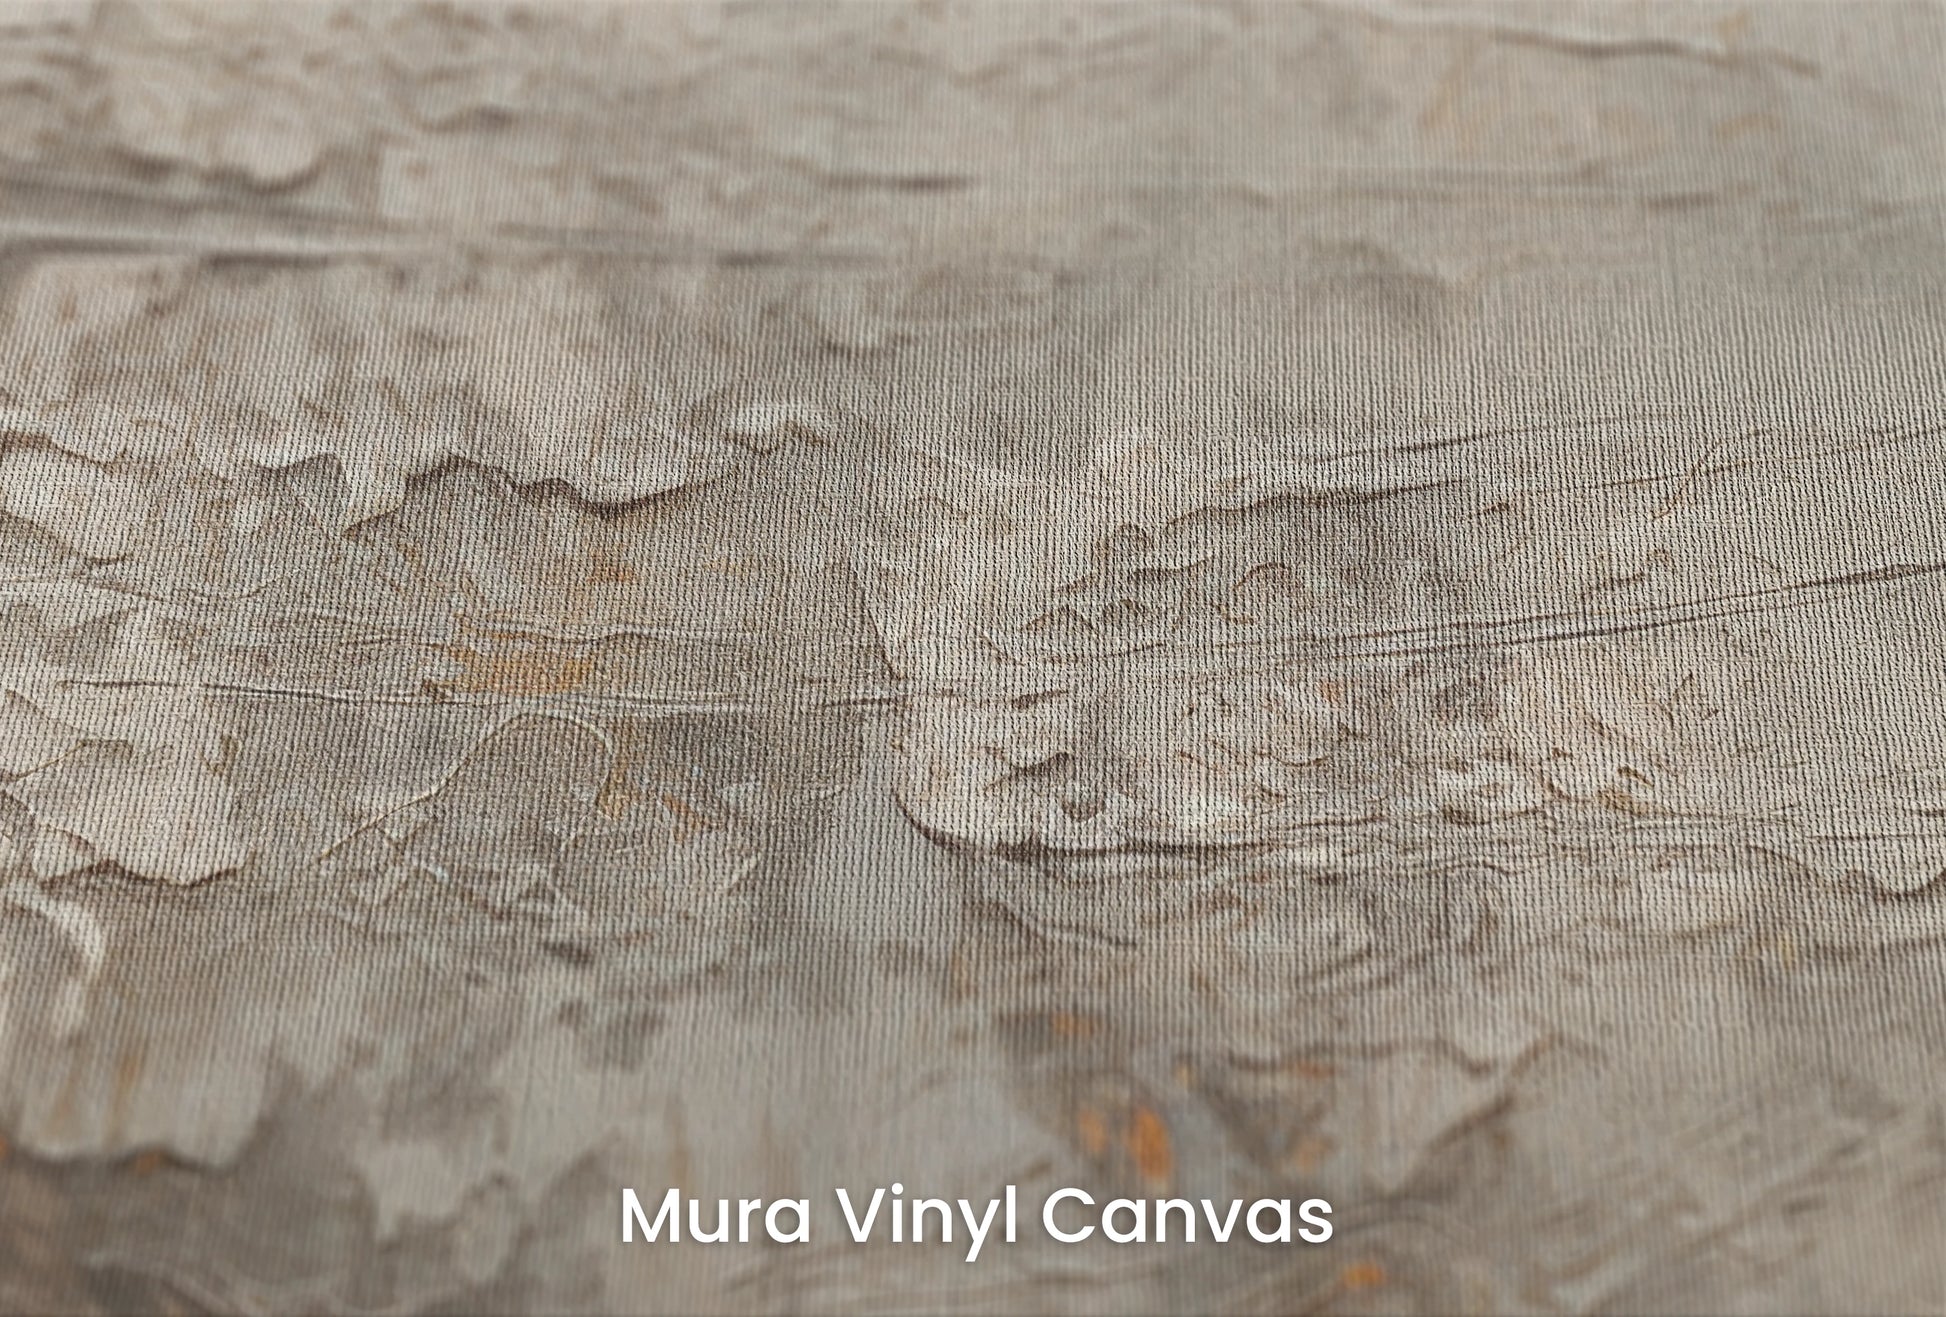 Zbliżenie na artystyczną fototapetę o nazwie Mercury's Veins na podłożu Mura Vinyl Canvas - faktura naturalnego płótna.